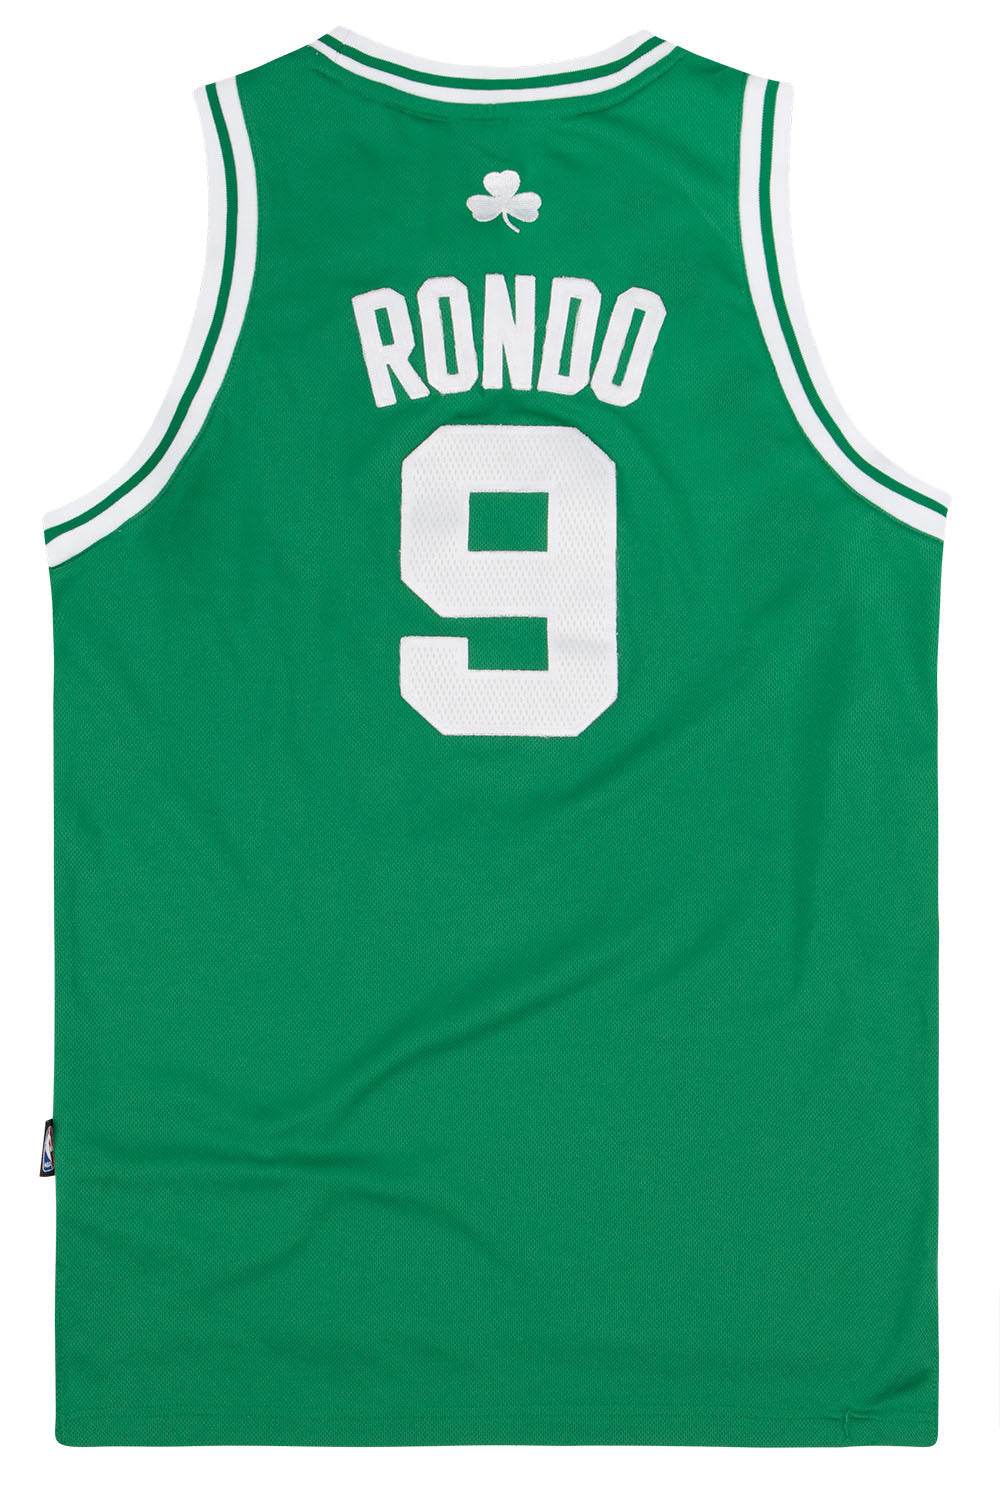 Boston Celtics NBA Jersey – VintageFolk